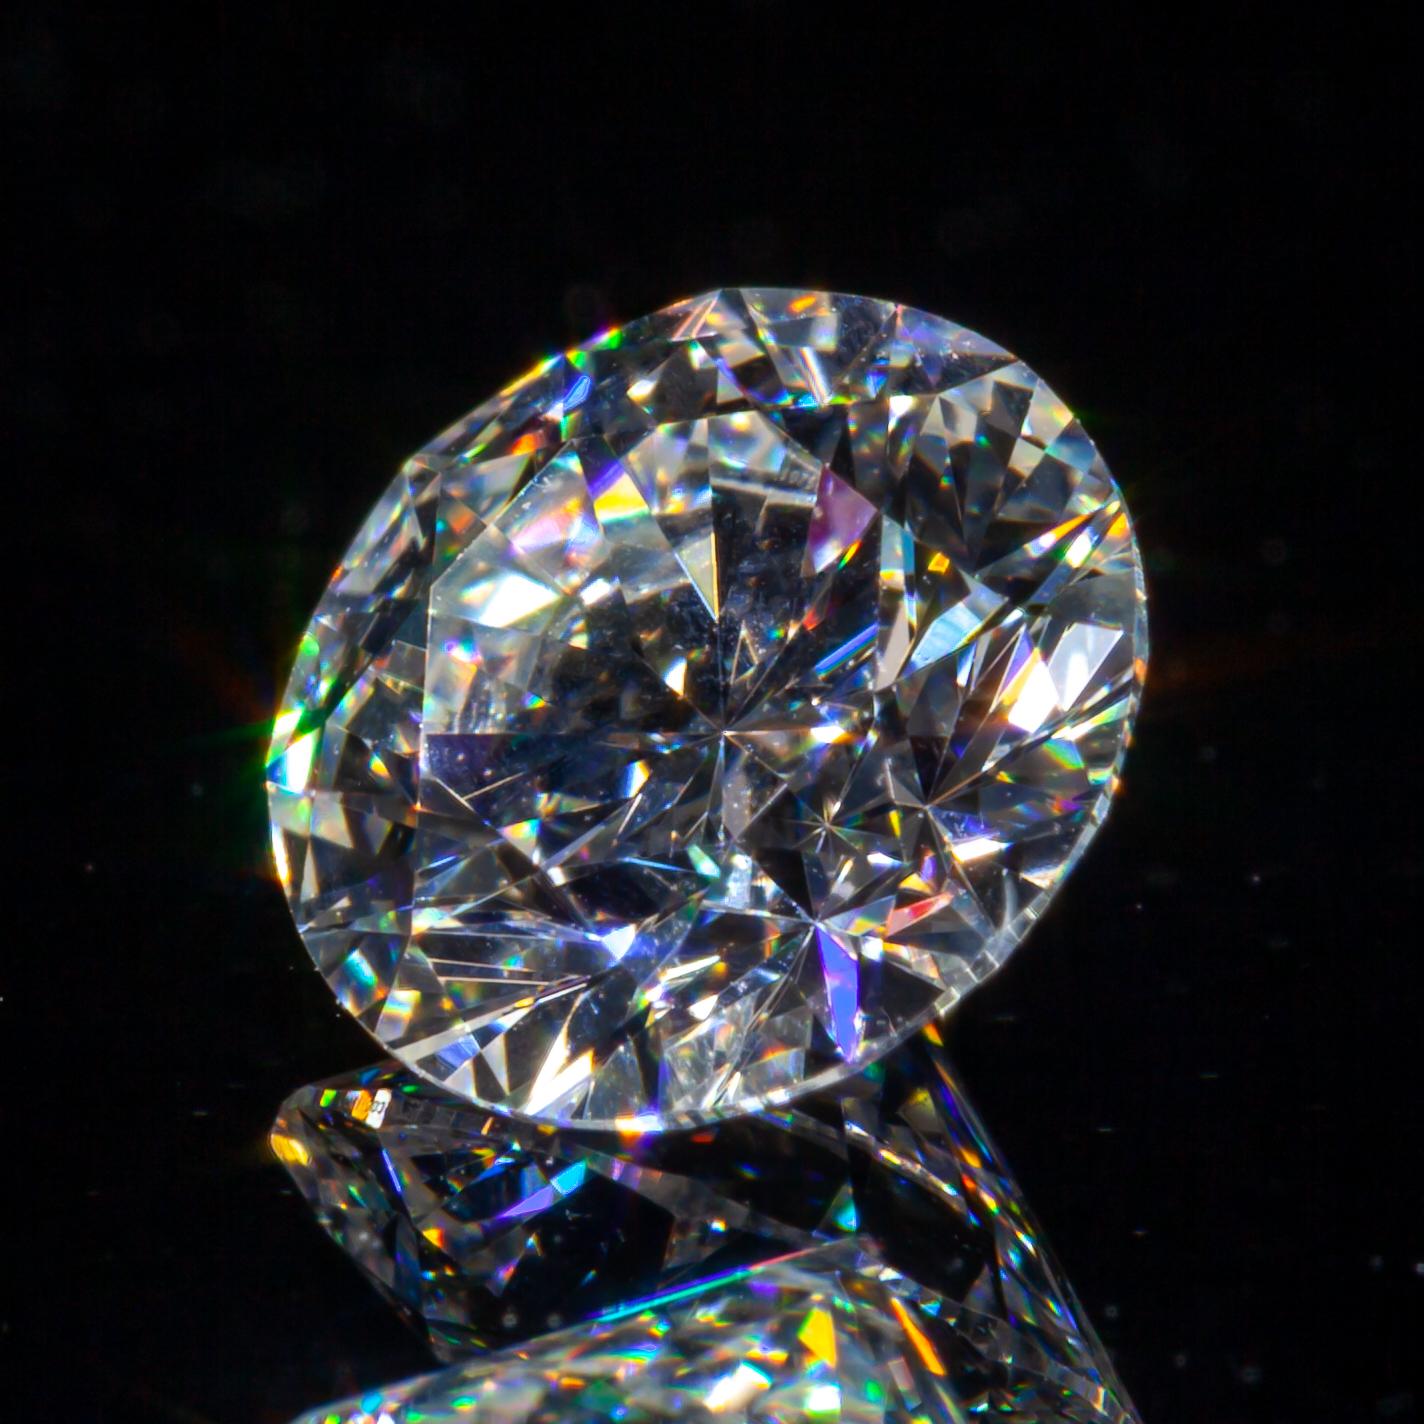 0.70 Carat Loose E / VS2 Round Brilliant Cut Diamond certifié GIA

Informations générales sur le diamant
Numéro de rapport GIA : 6187452729
Taille du diamant : Brilliante ronde
Dimensions : 5.79  x  5.77  -  3.49 mm

Résultats de la classification